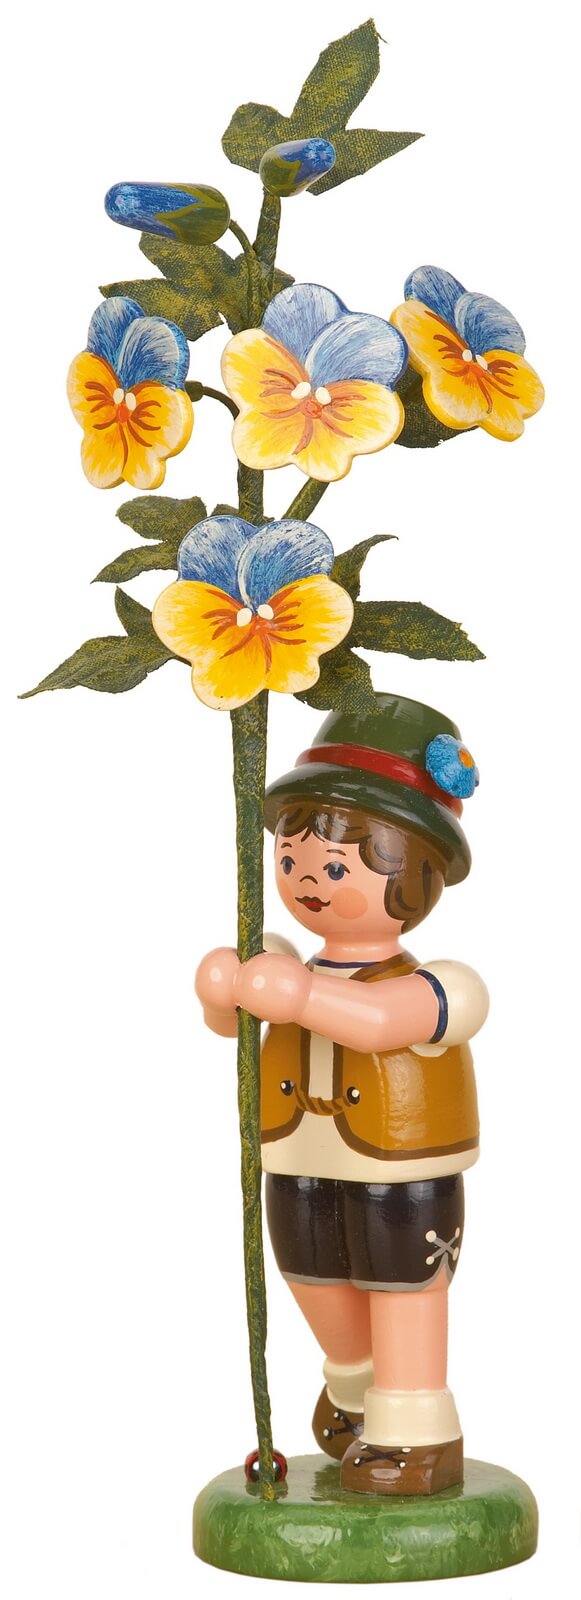 Junge mit Hornveilchen aus Holz aus der Serie Hubrig Blumenkinder